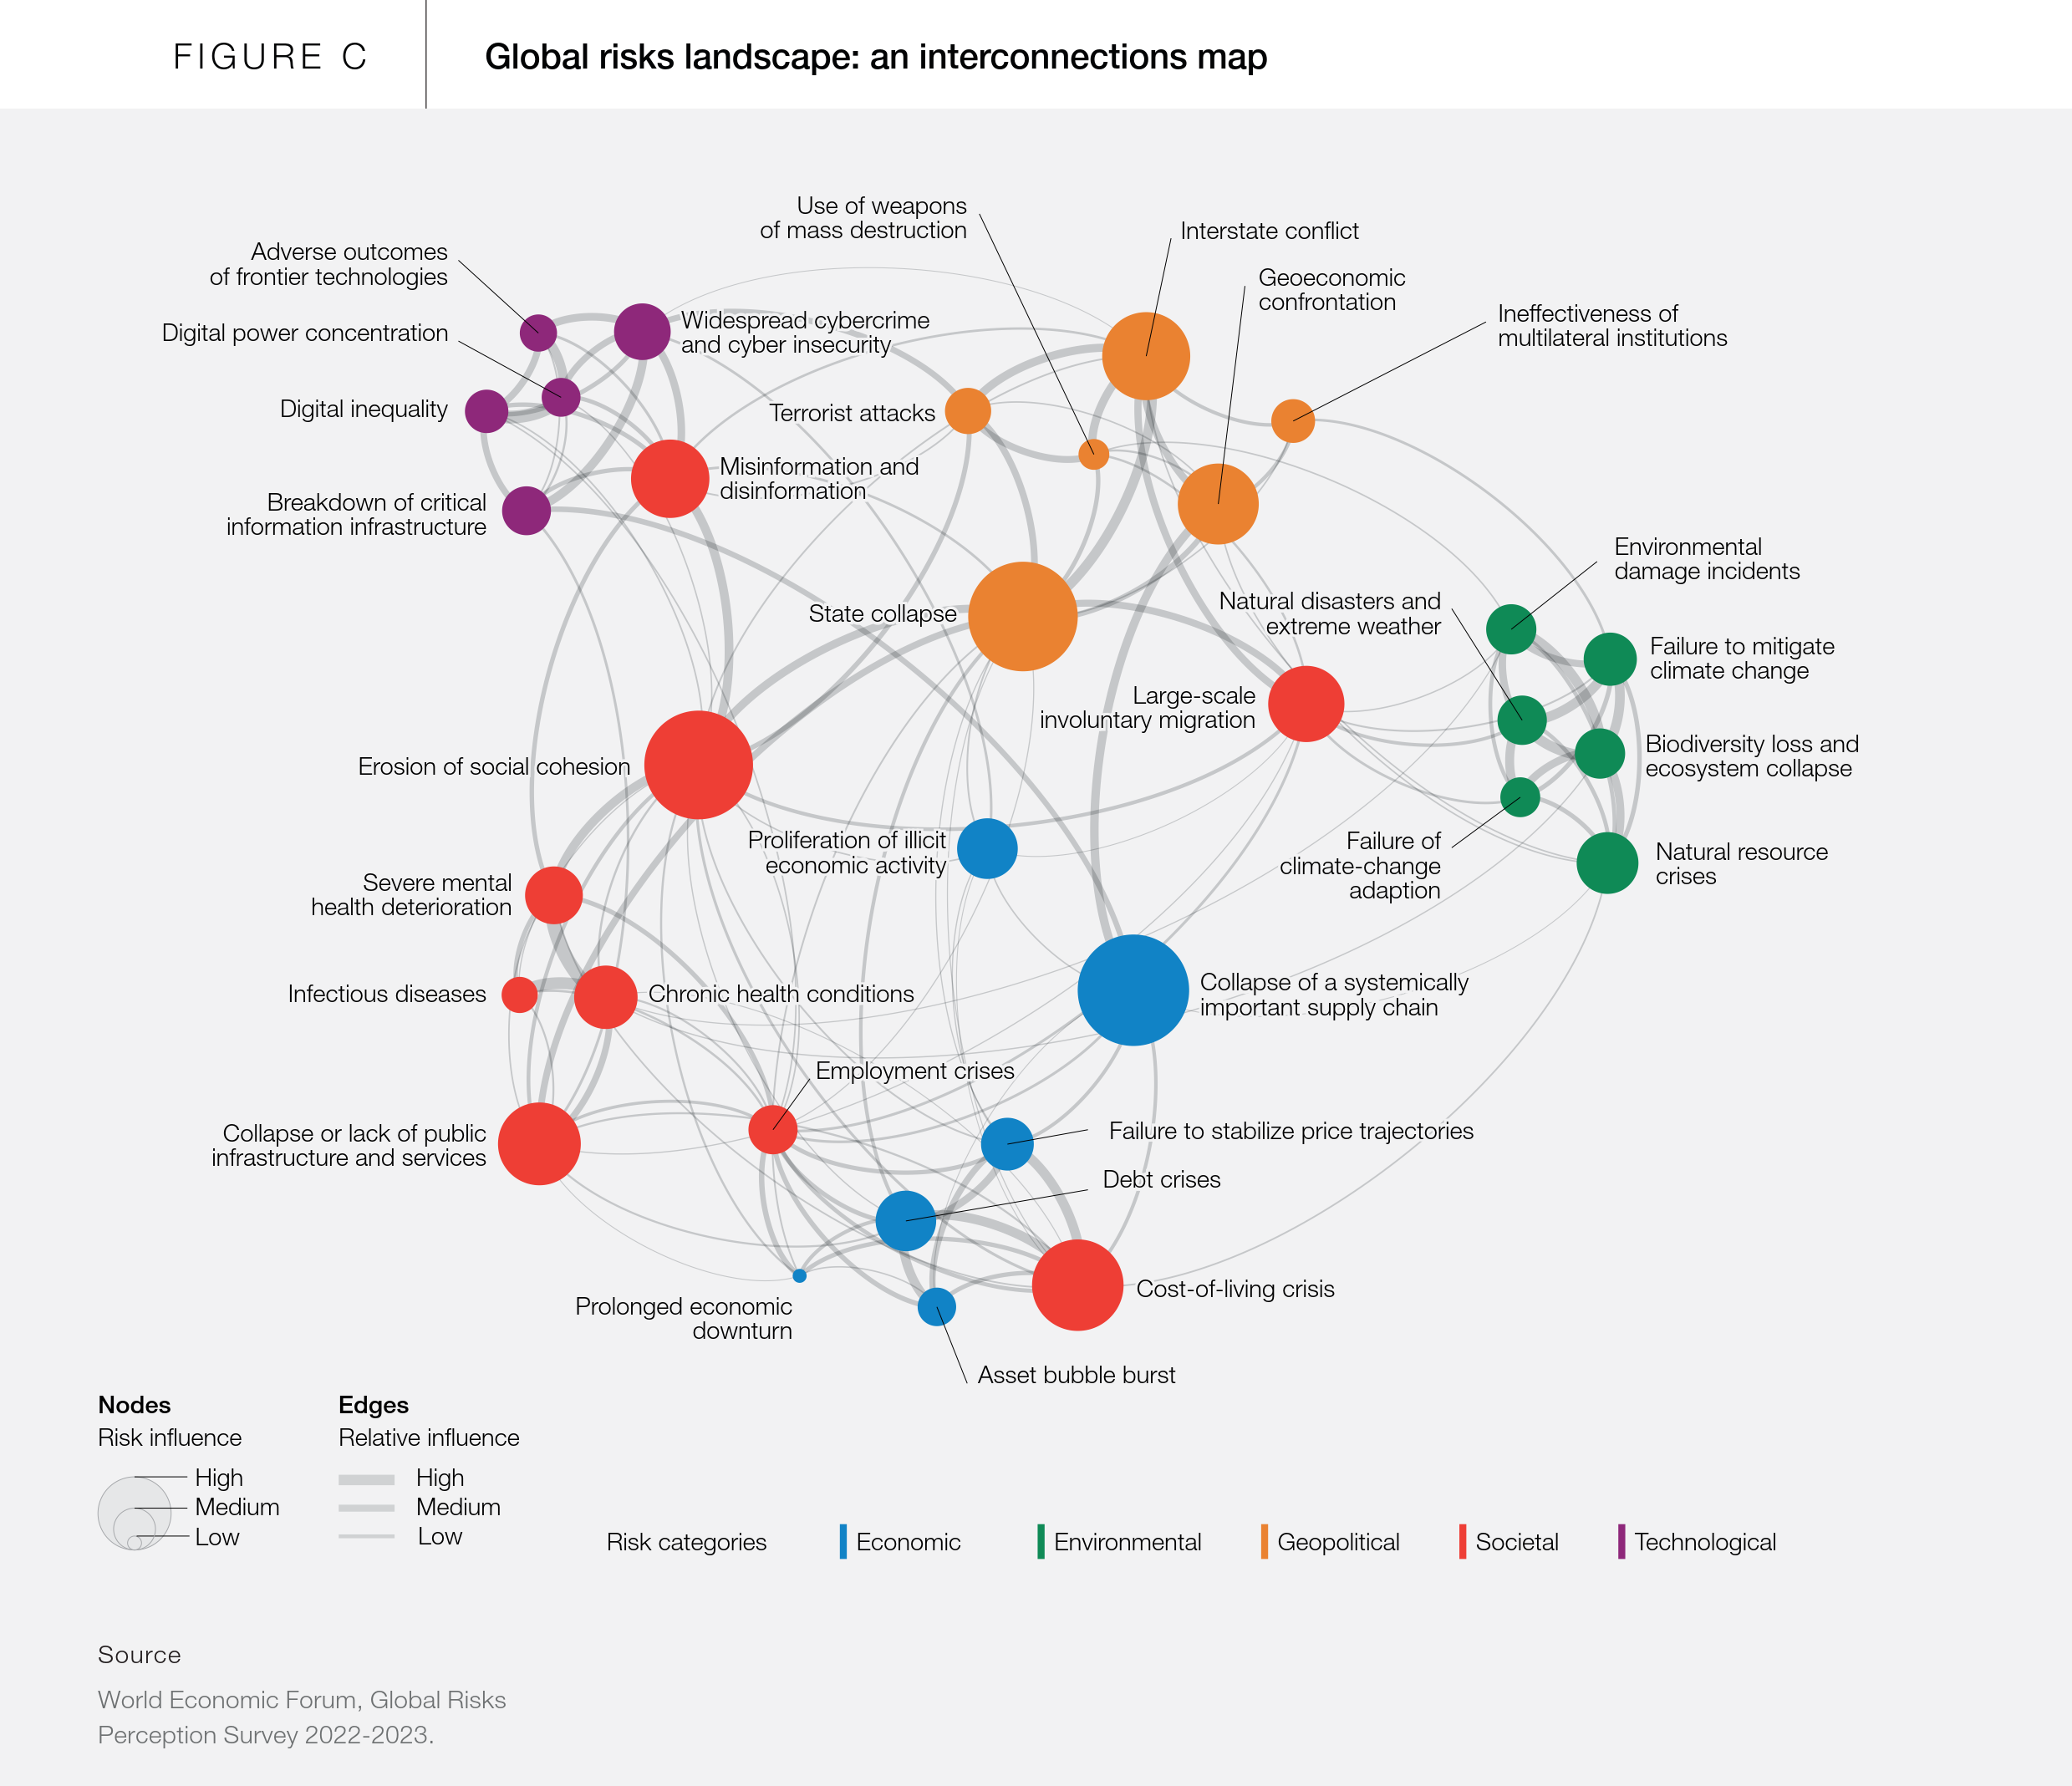 WEF Global Risks Report 2023 global risks landscape